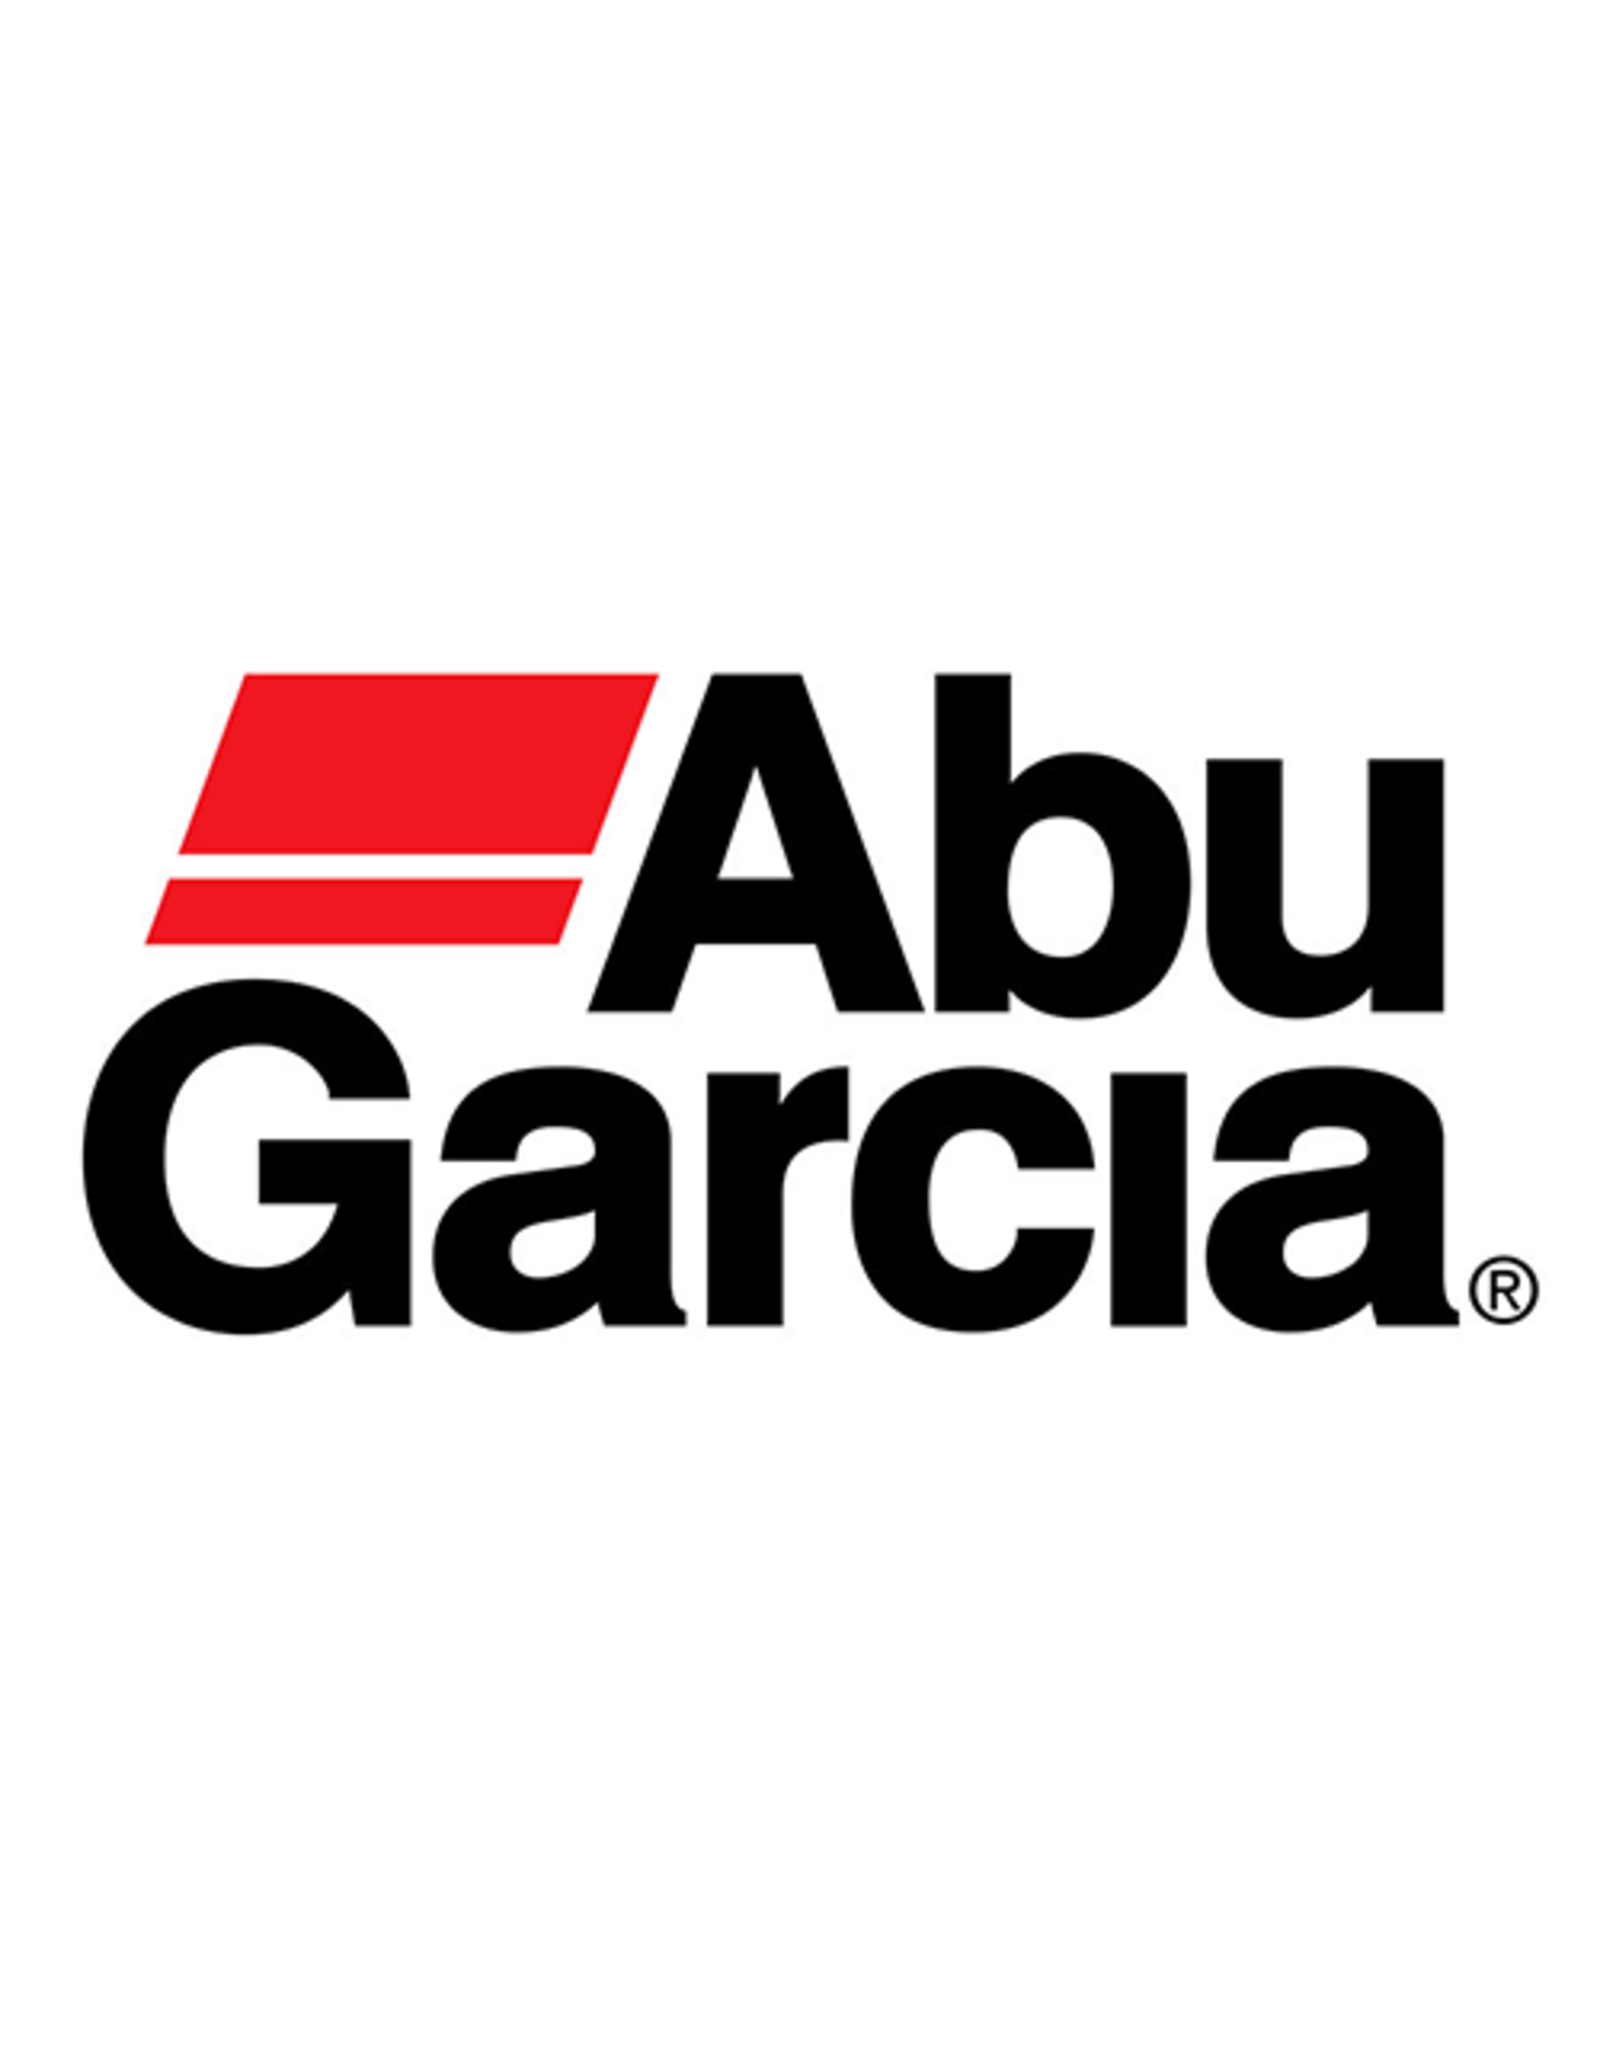 Abu Garcia 20722  GEARING COG I